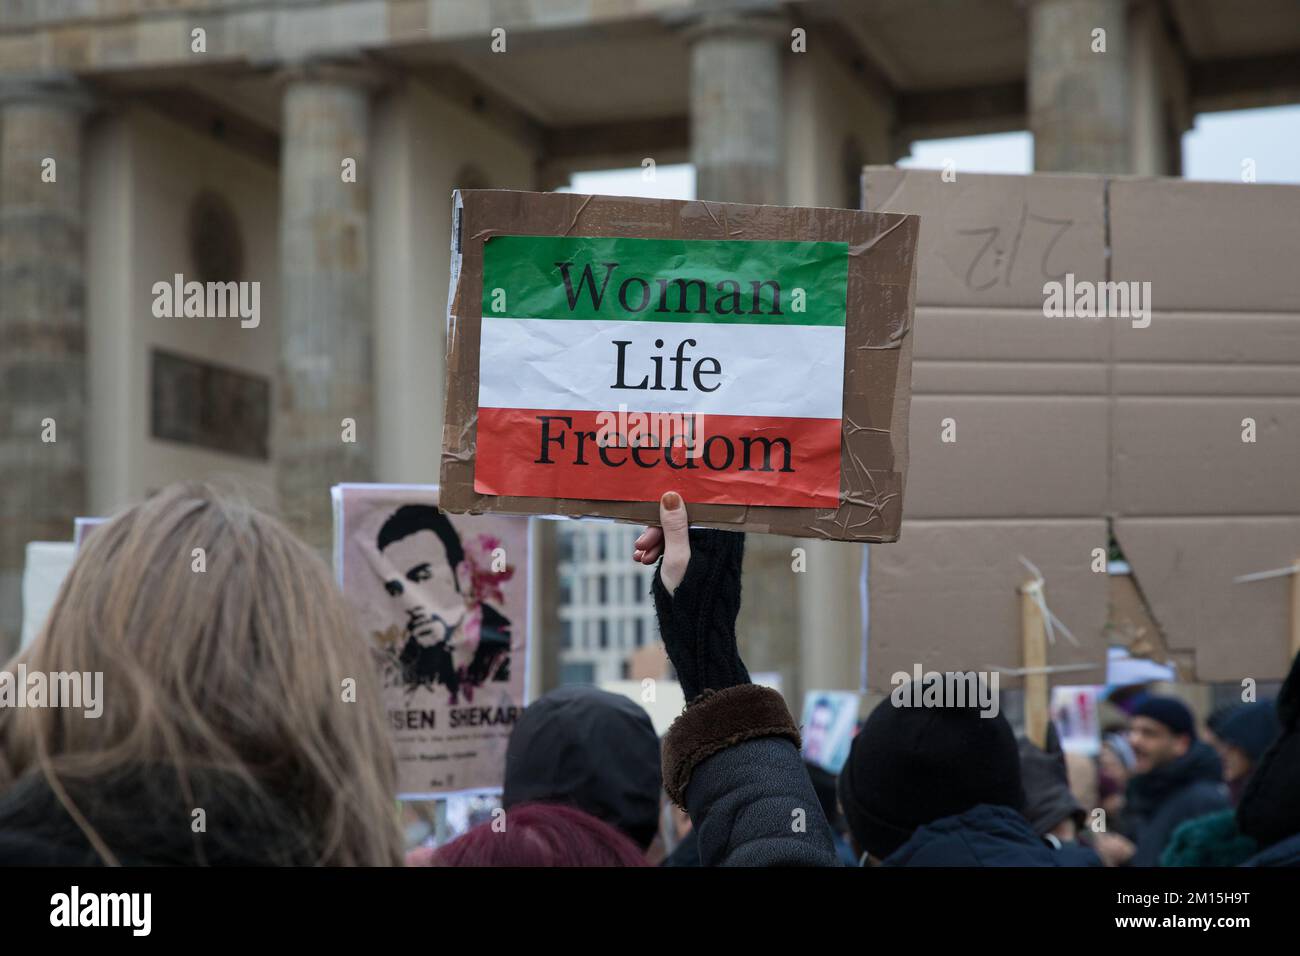 Berlino, Germania. 10th Dec, 2022. Molti manifestanti a Berlino si sono riuniti per protestare contro il regime iraniano il 10 dicembre 2022. I manifestanti hanno tenuto numerosi segni che leggevano la morte dei mullah, la libertà di vita della donna, e contro le esecuzioni in Iran. Le proteste sono suscitato da una crescente preoccupazione a livello internazionale per la situazione in Iran. I manifestanti hanno anche cantato slogan che chiedevano il rovesciamento del governo. Inoltre, a seguito dell'esecuzione del rapper iraniano Mohsen Shekari, sta circolando una lista di altri 24 nomi di manifestanti in attesa di una condanna a morte. A livello internazionale, il regime è brusco Foto Stock